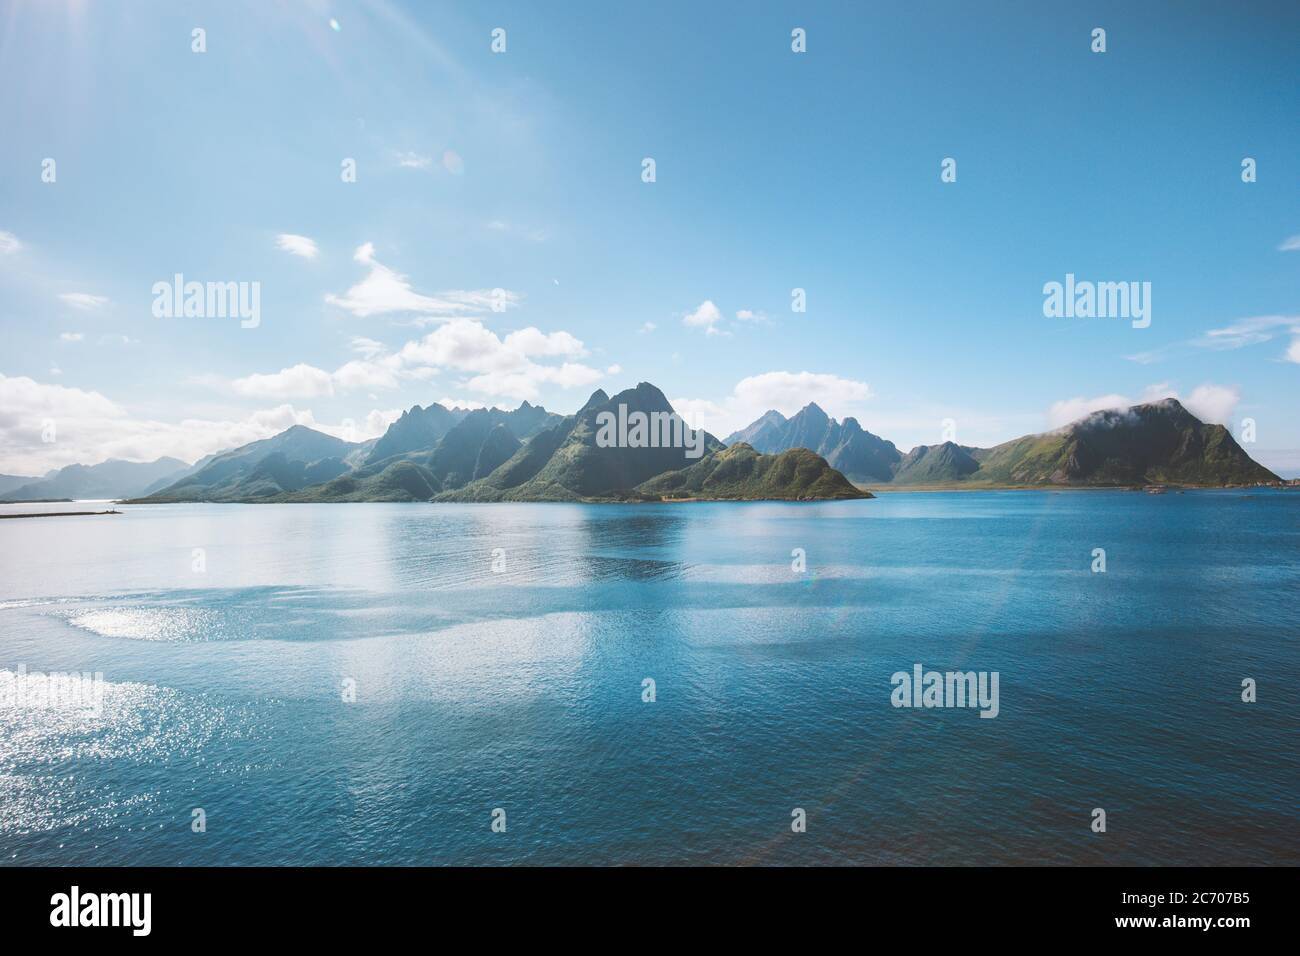 Norvegia paesaggio fiordo e montagne scandinavia natura Vesteralen isole deserto blu mare soleggiato giorno scenario Foto Stock